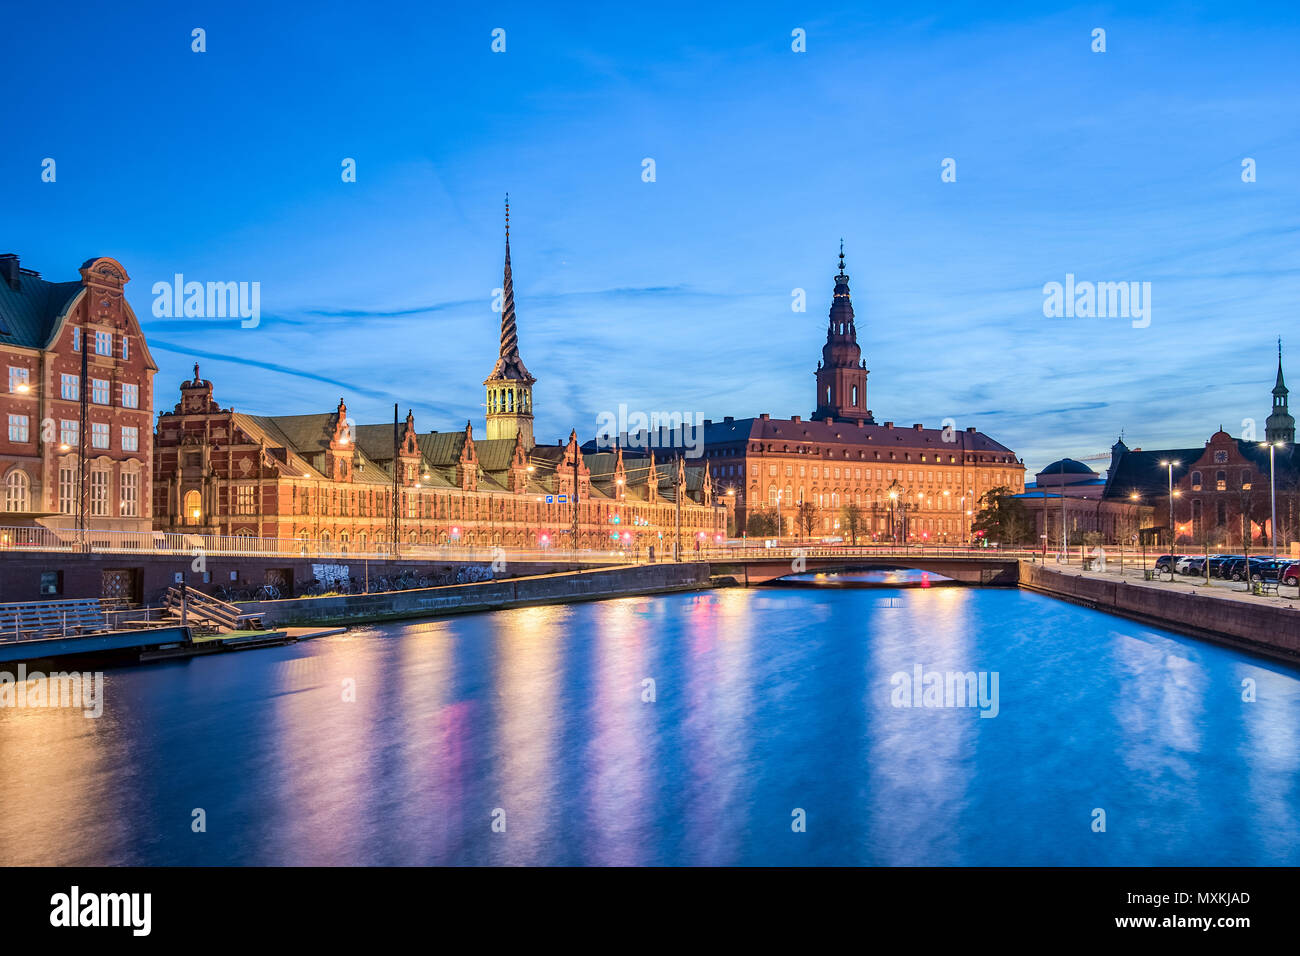 Copenhagen city at night with Christiansborg Palace Copenhagen city, Denmark. Stock Photo